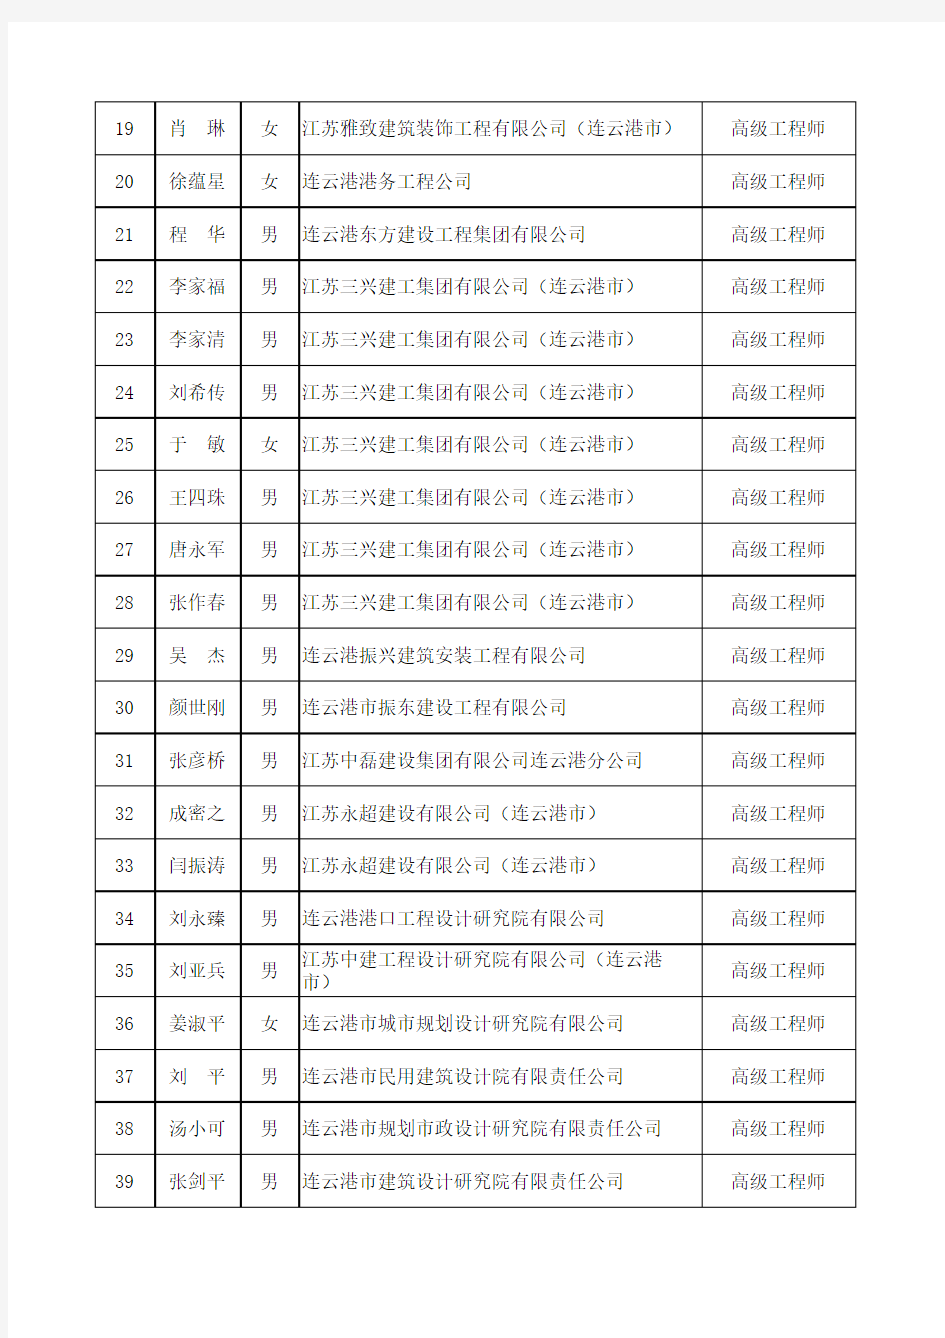 江苏省建设工程高级专业技术资格评审委员会评审结果公示名单